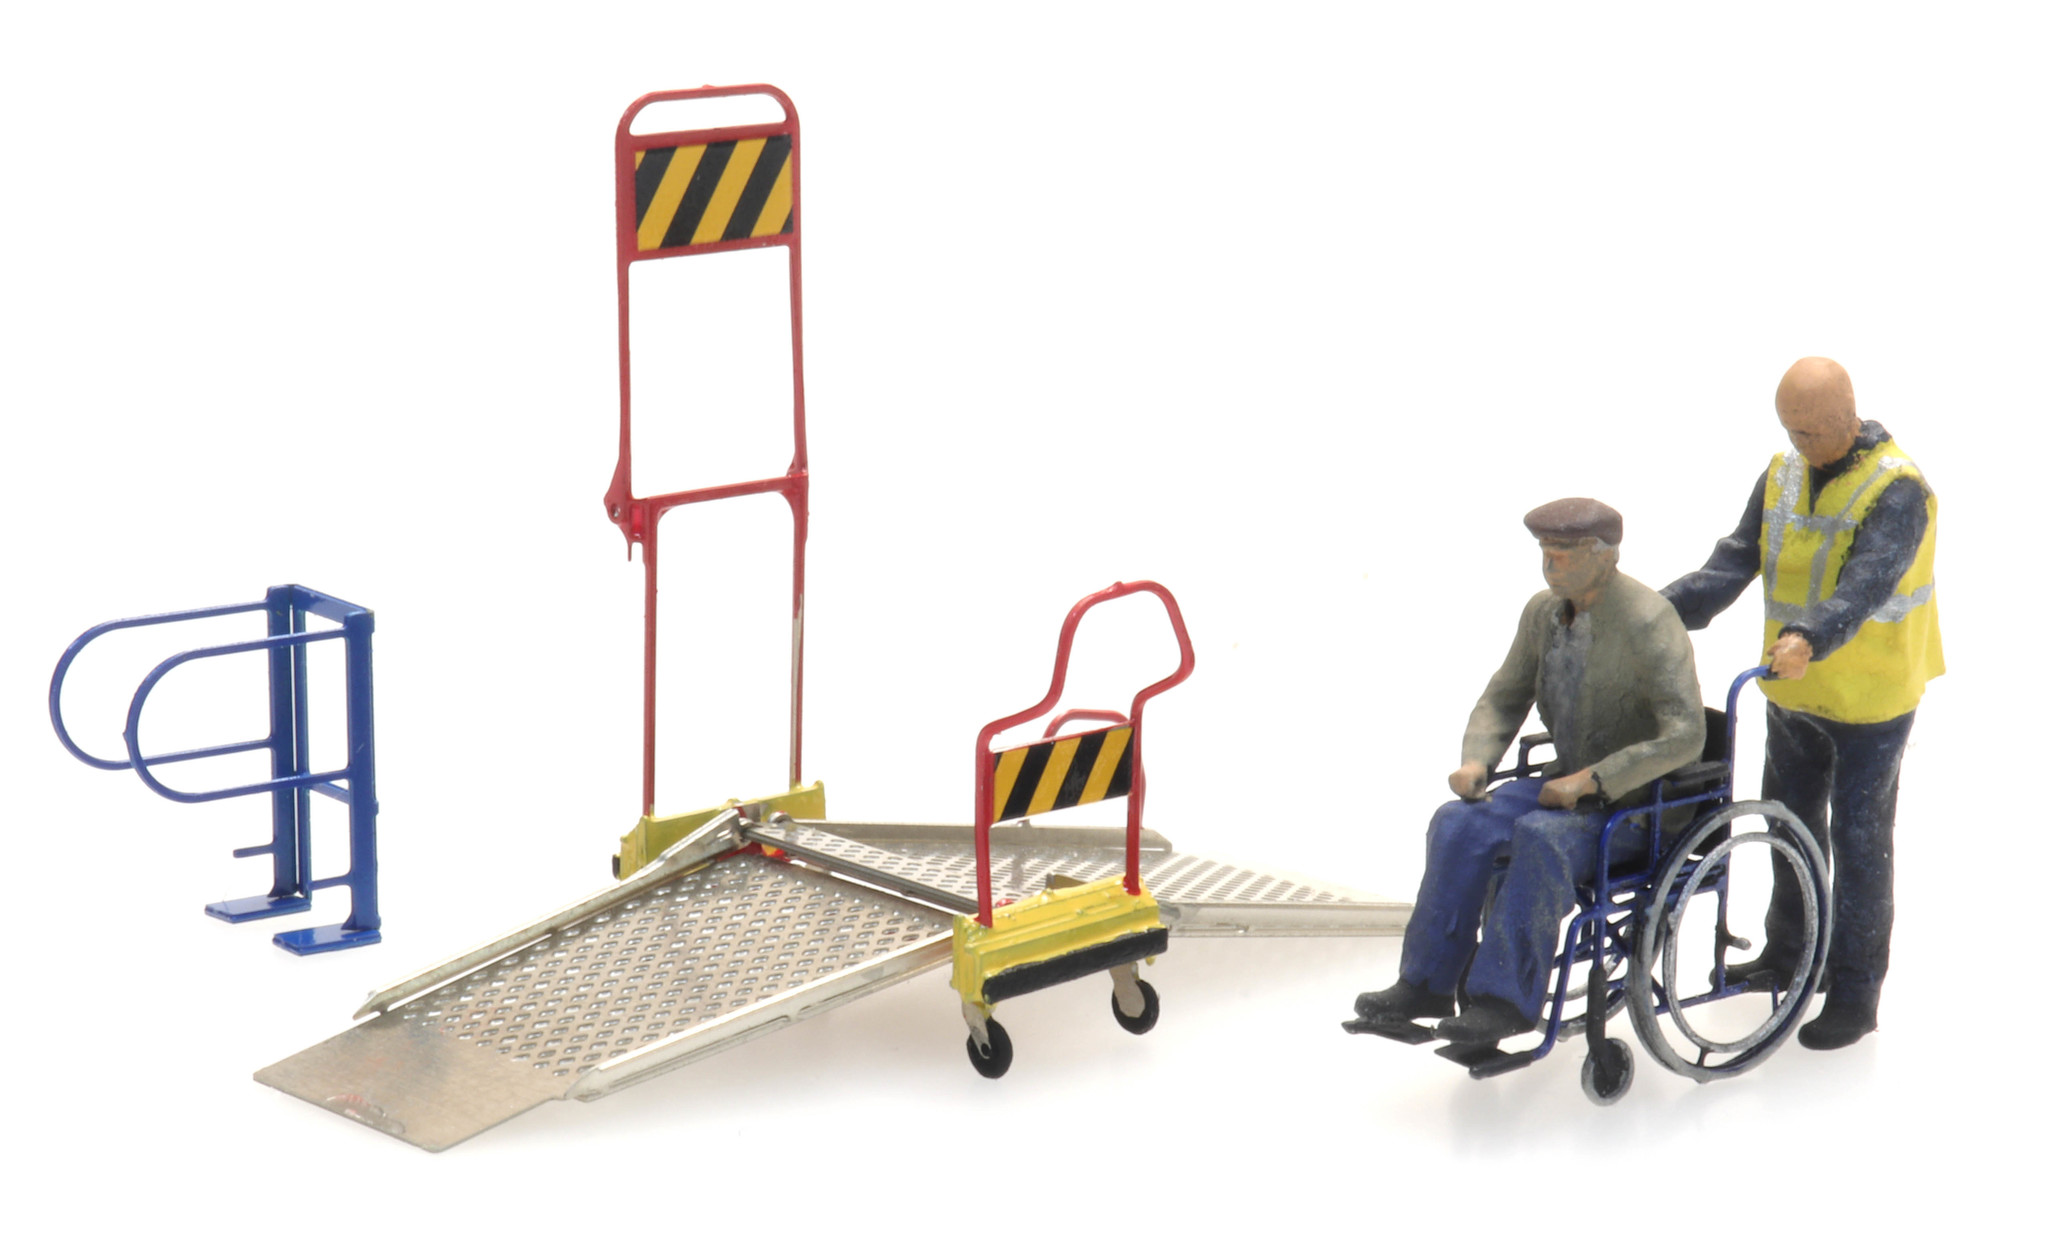 Artitec H0 387.447 Rolstoelbrug met rolstoel en 2 figuren - Modeltreinshop